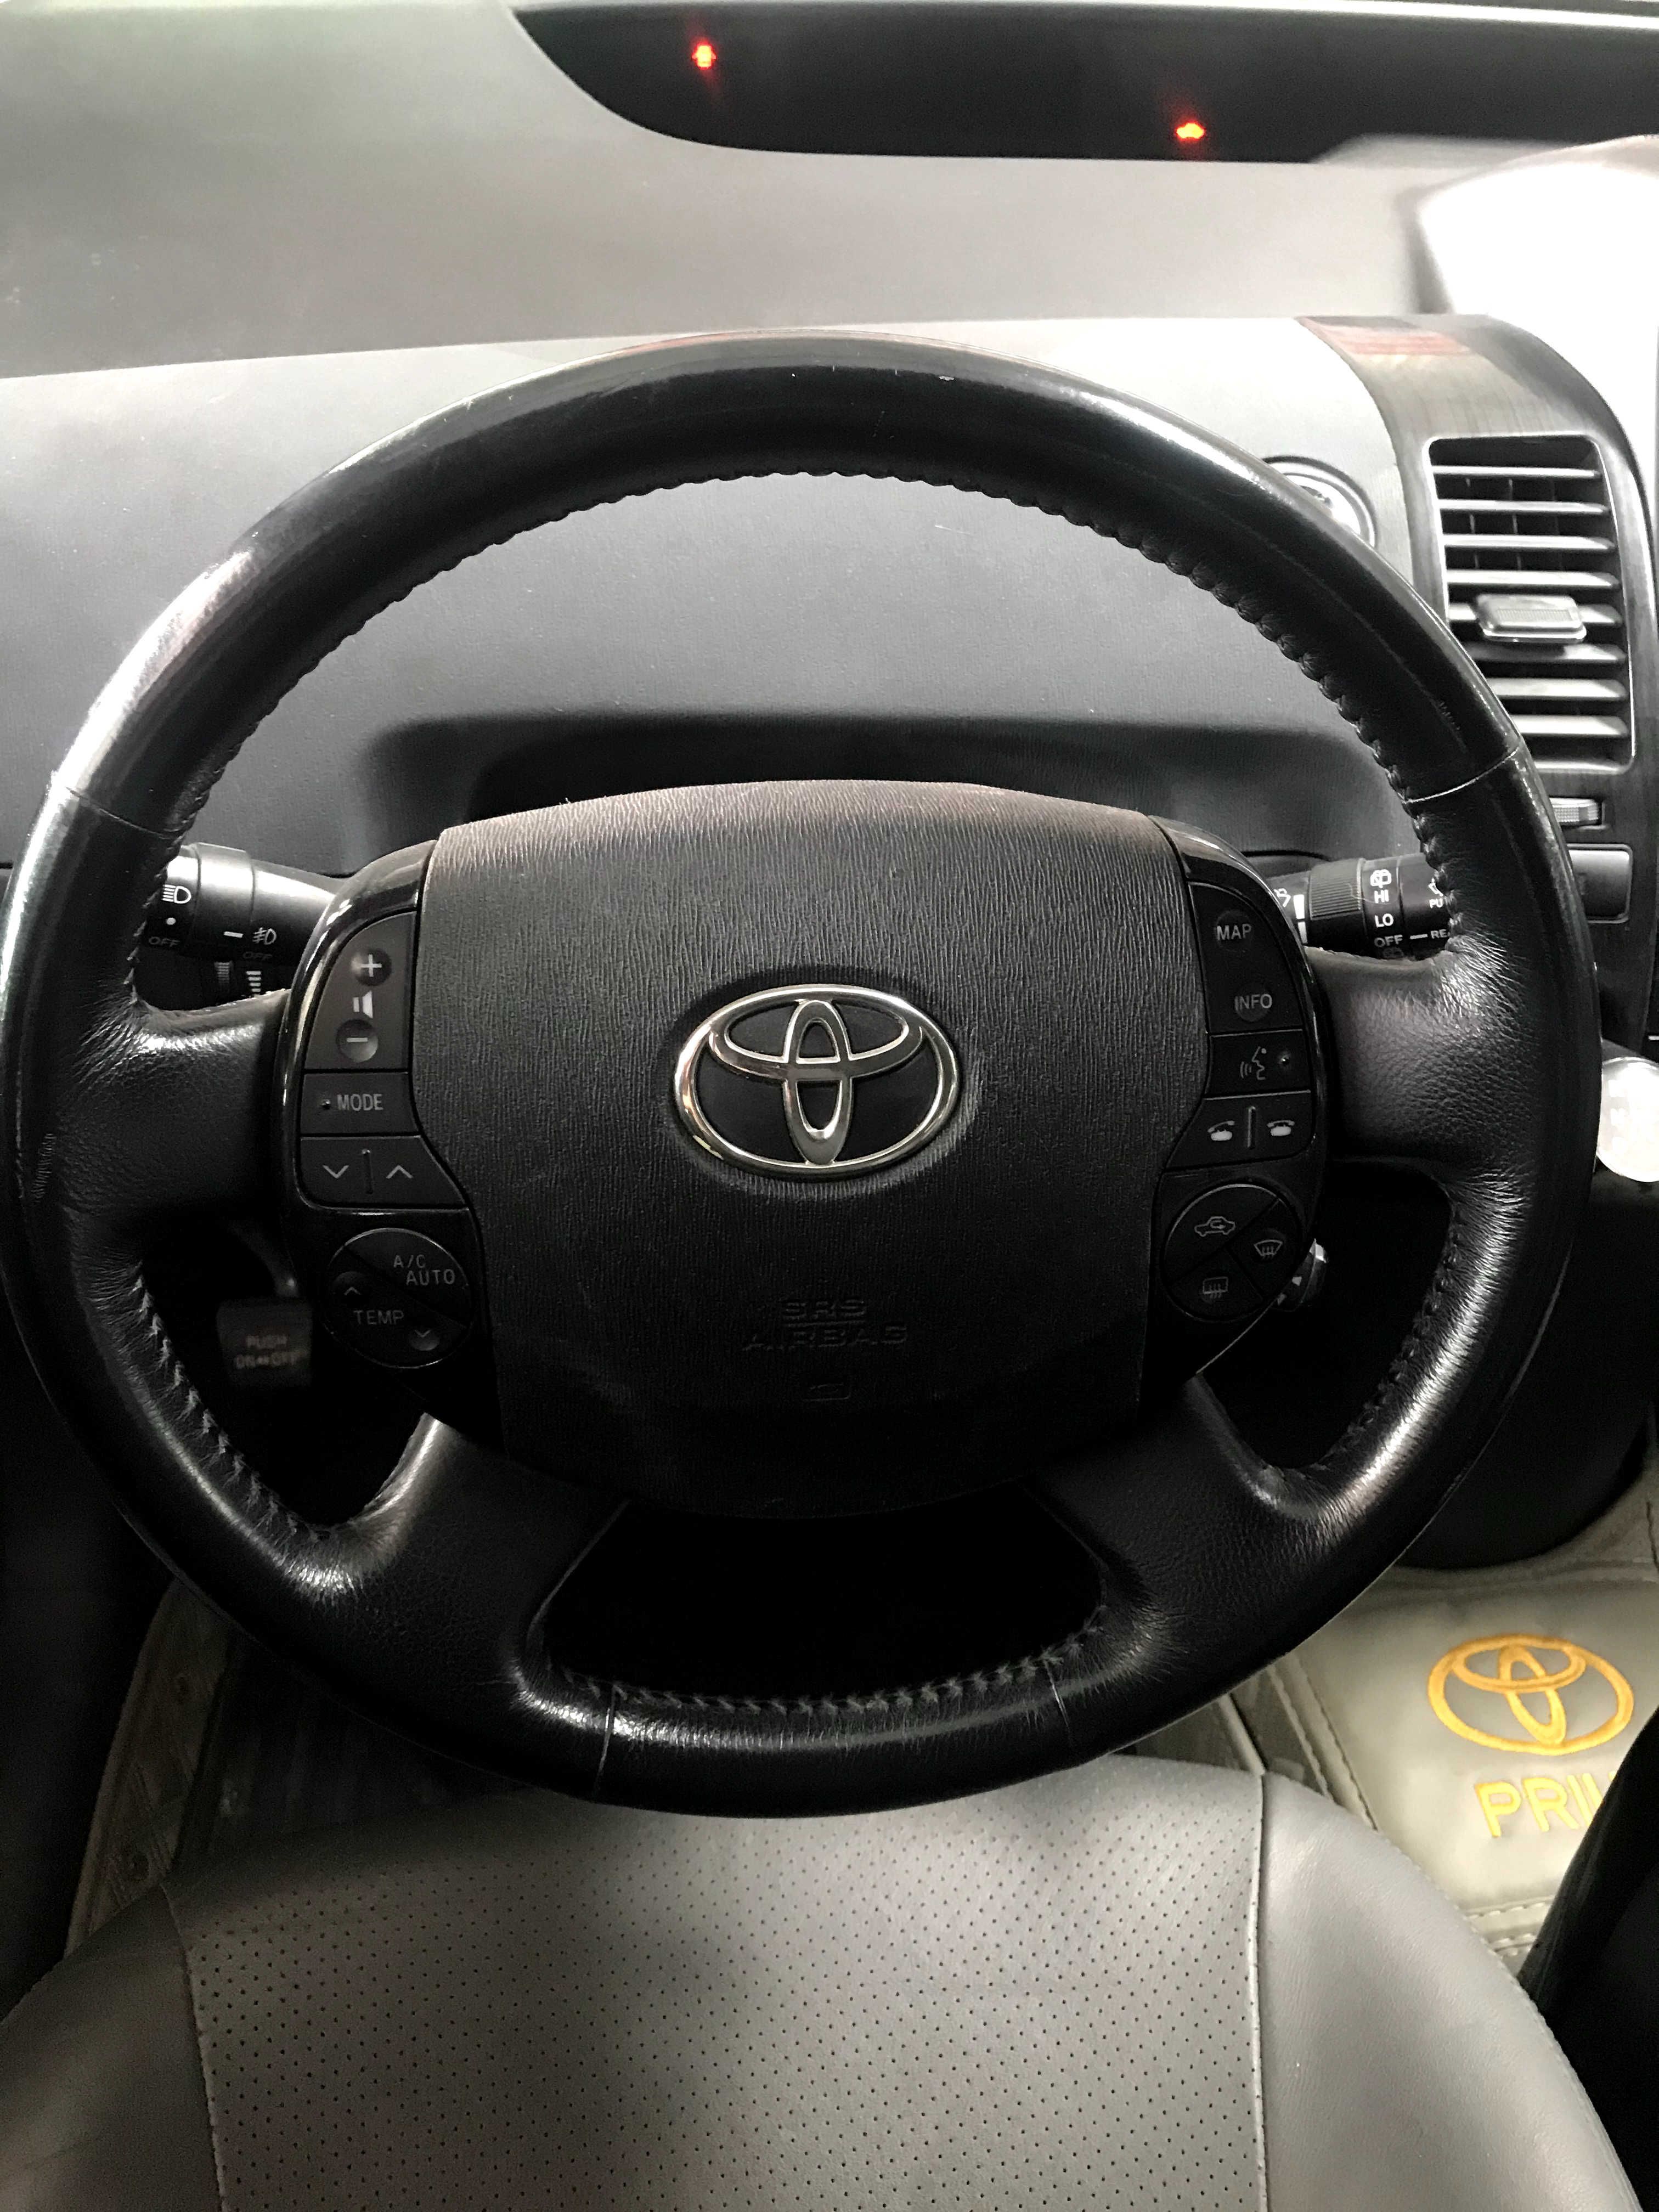 Toyota Prius 2007